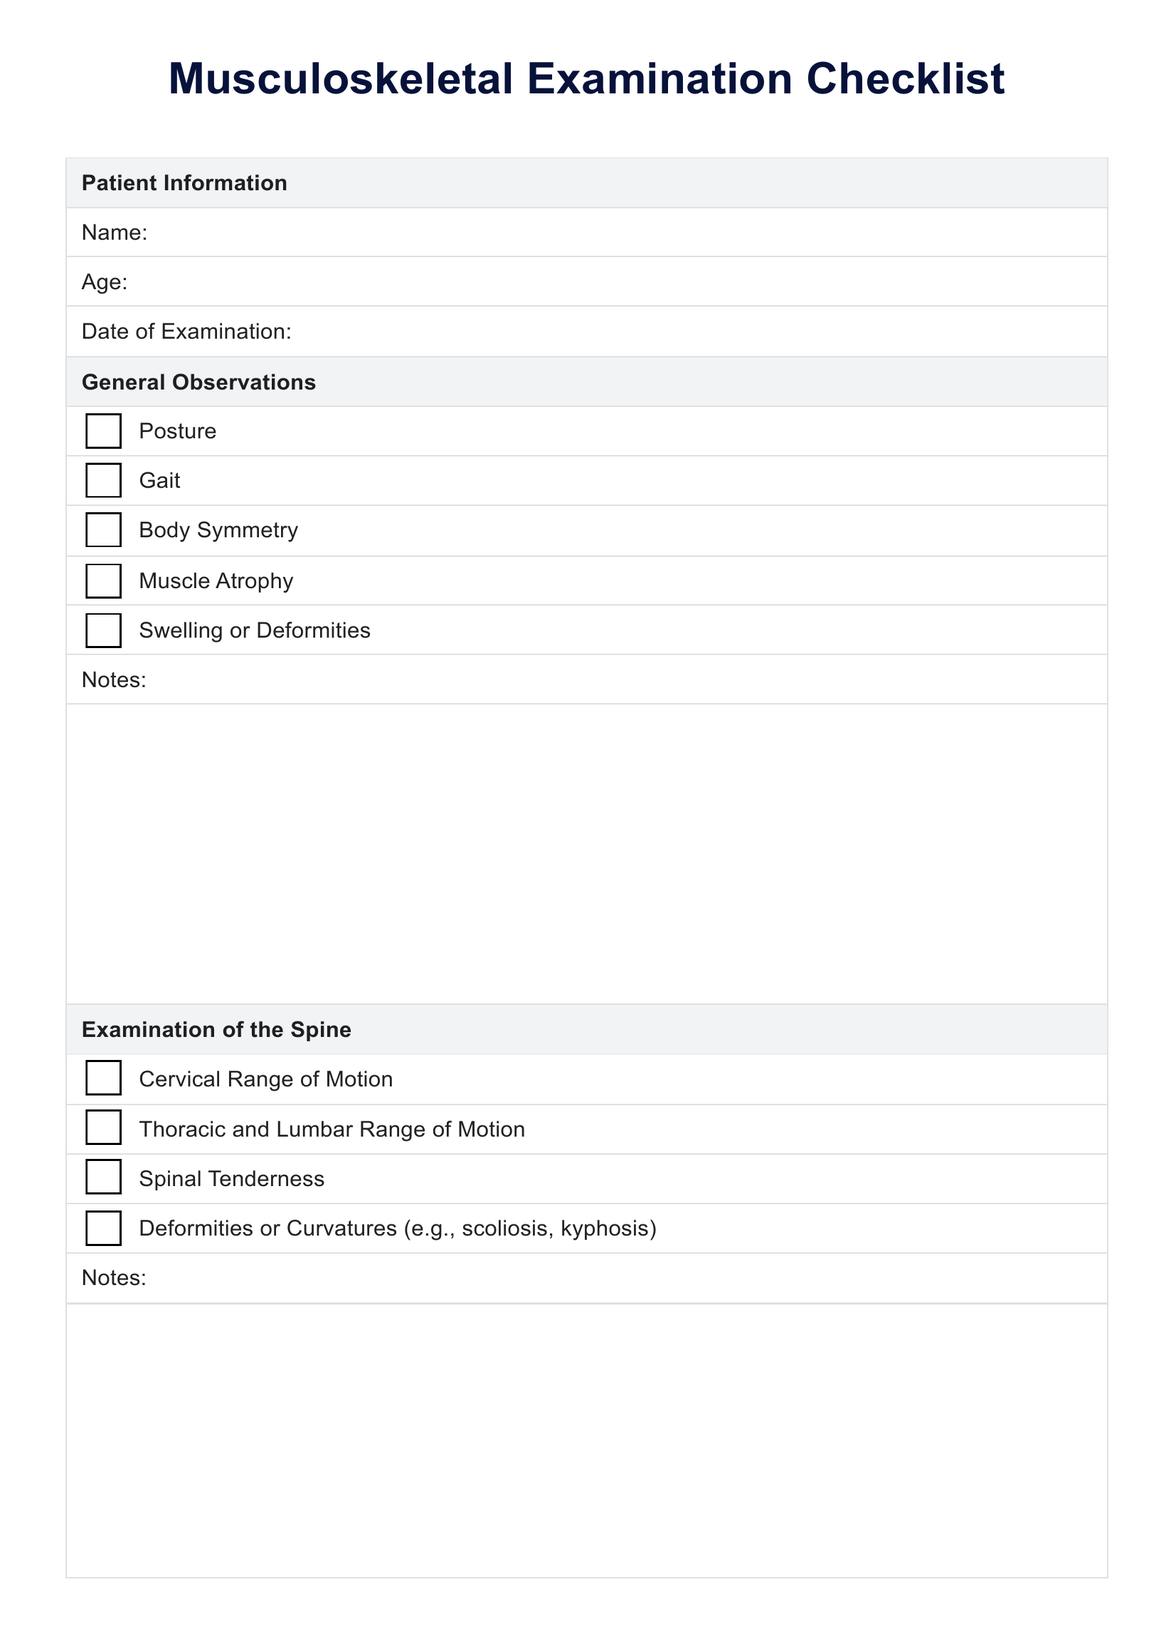 Musculoskeletal Examination Checklist PDF Example